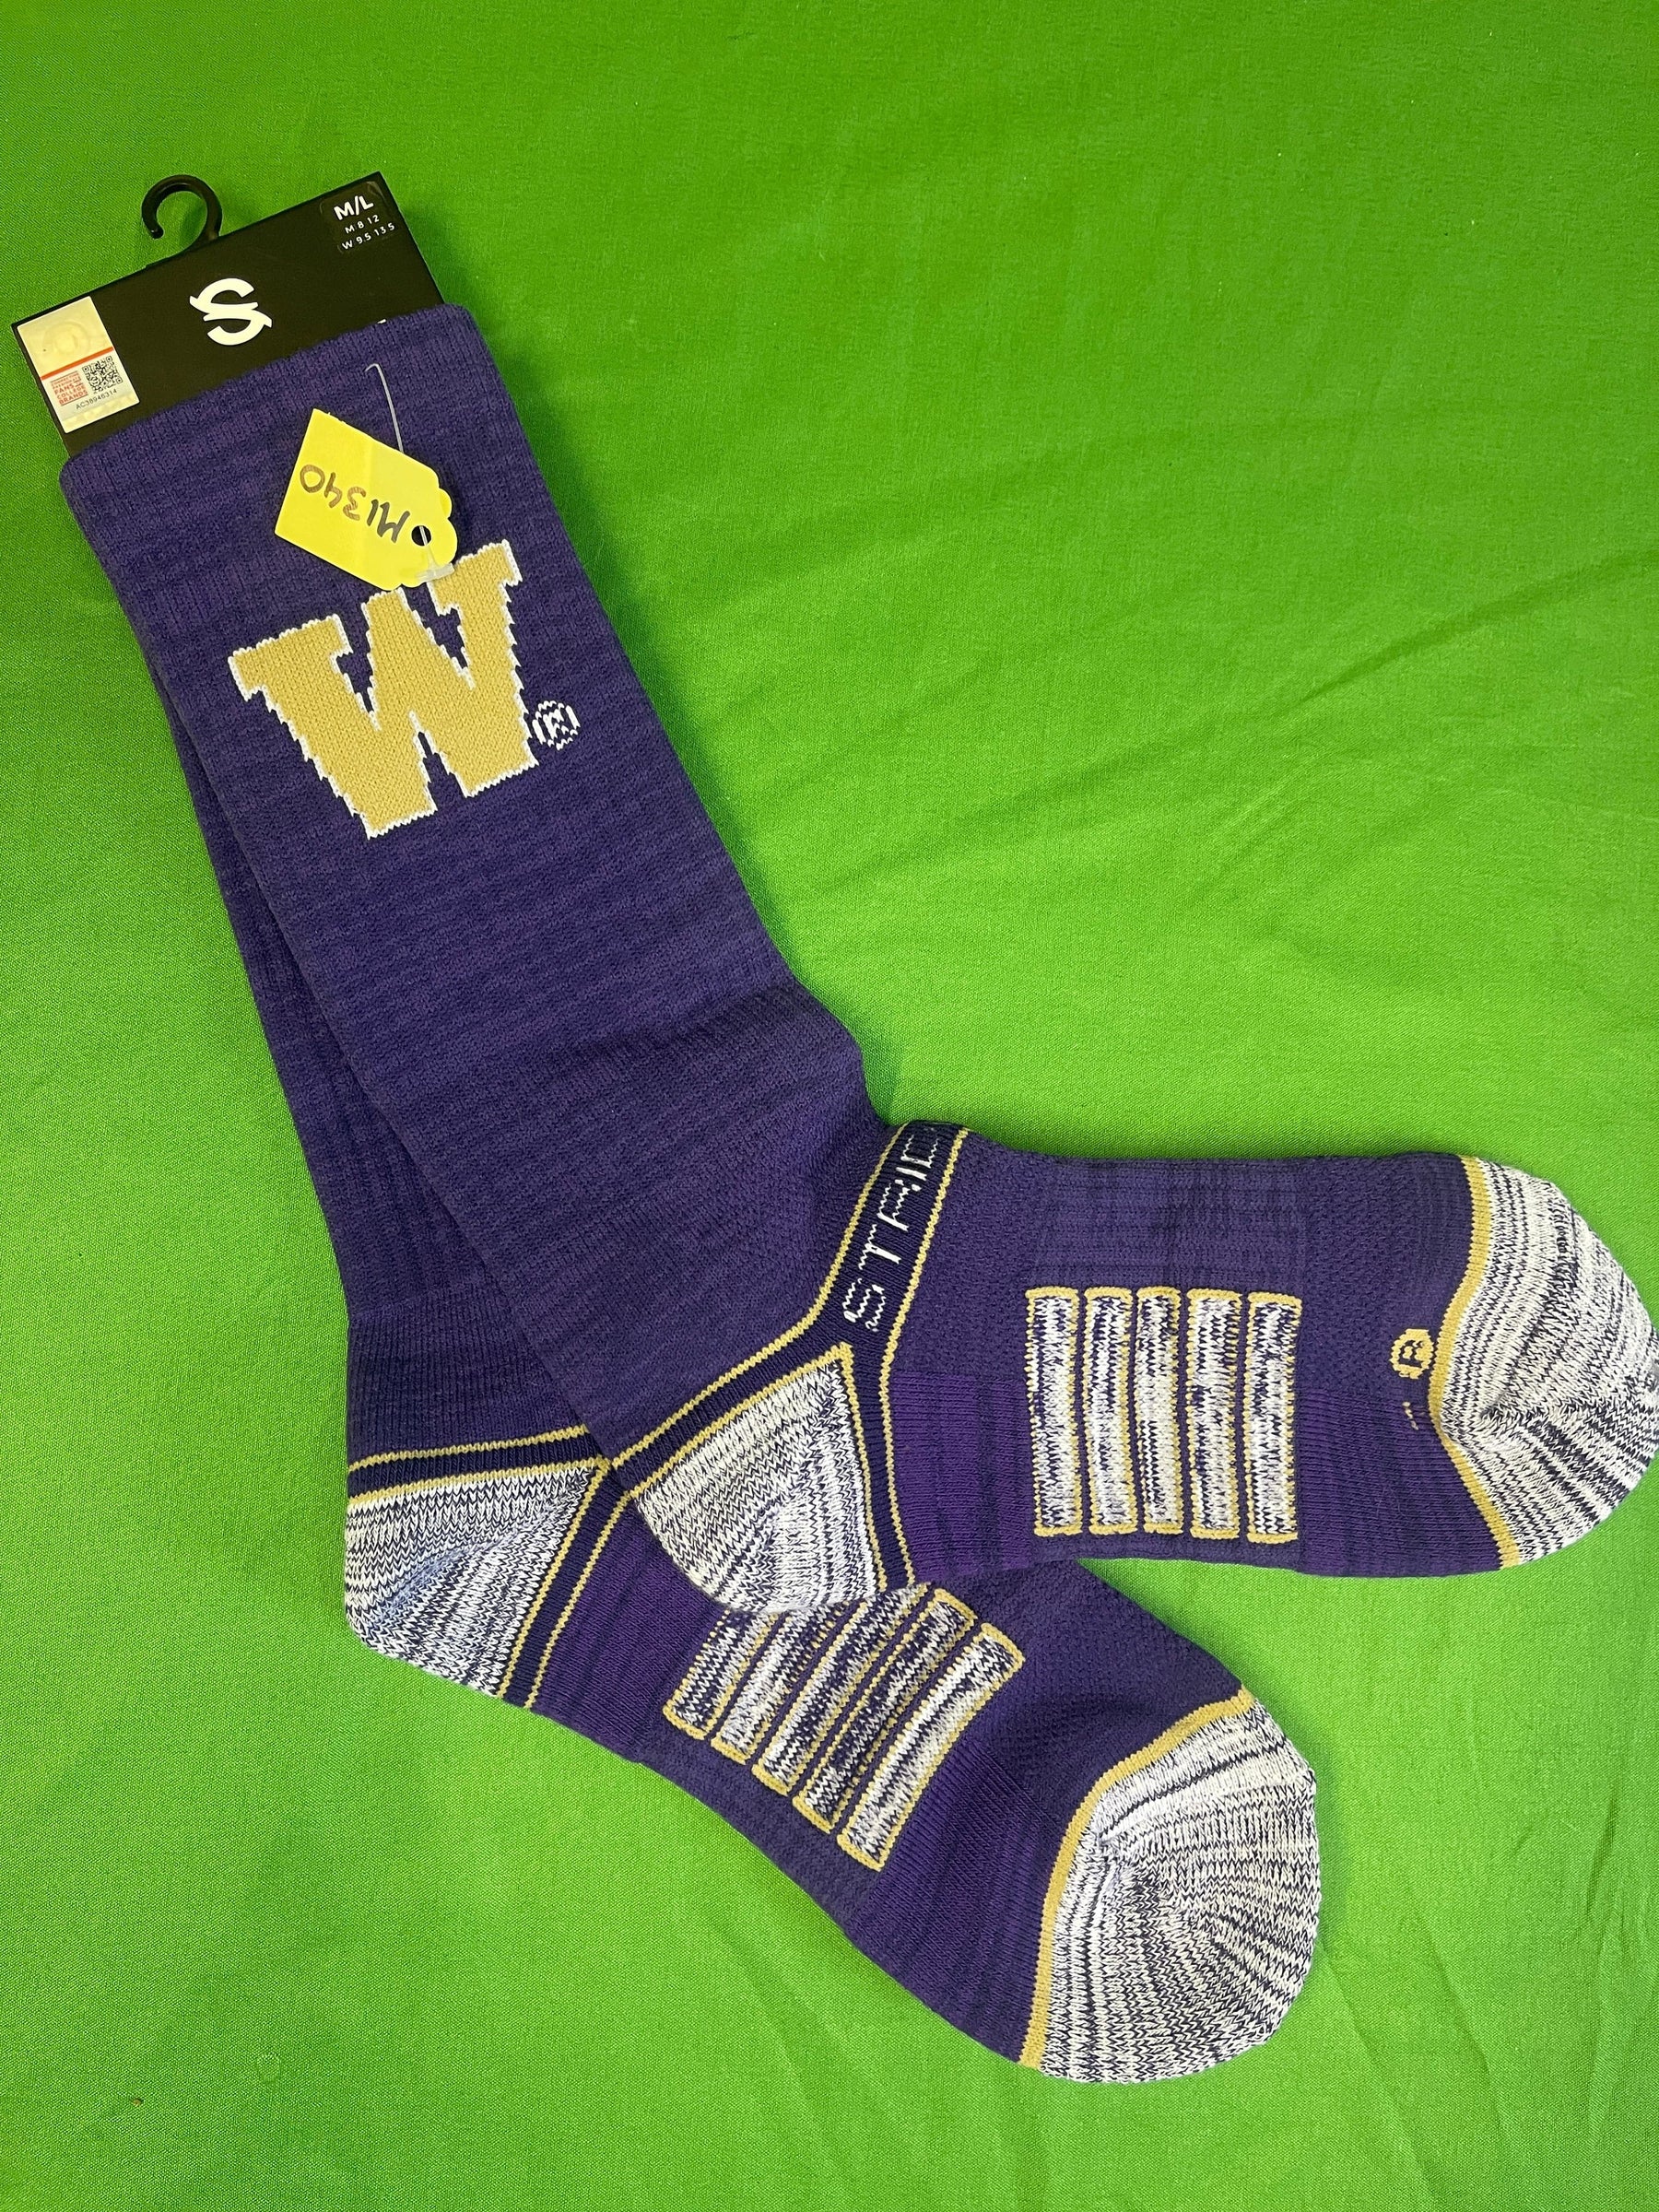 NCAA Washington Huskies Purple Socks Medium/Large NWT